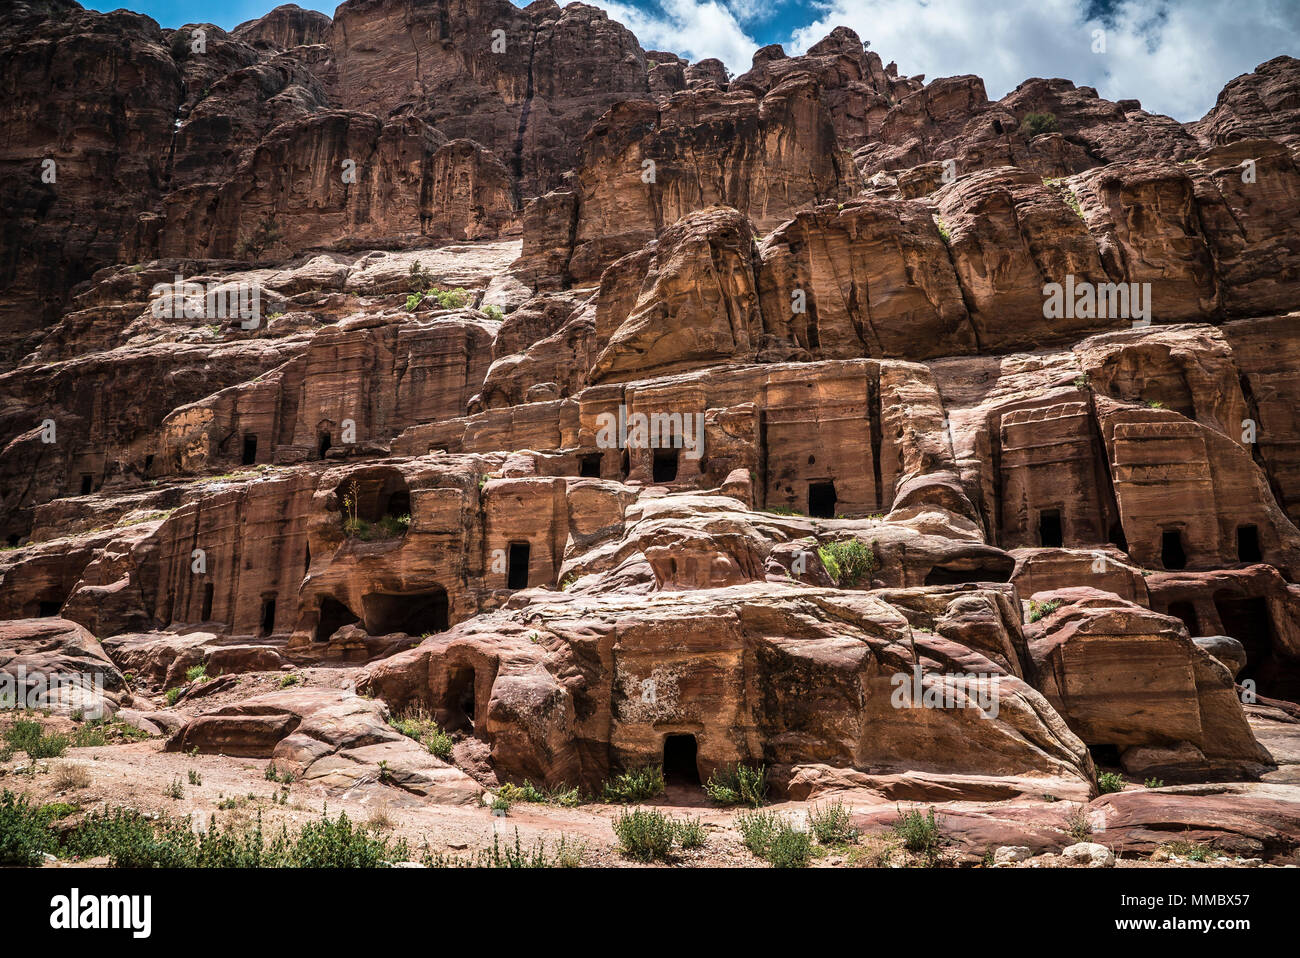 Petra Jordan Mountains view Stock Photo - Alamy